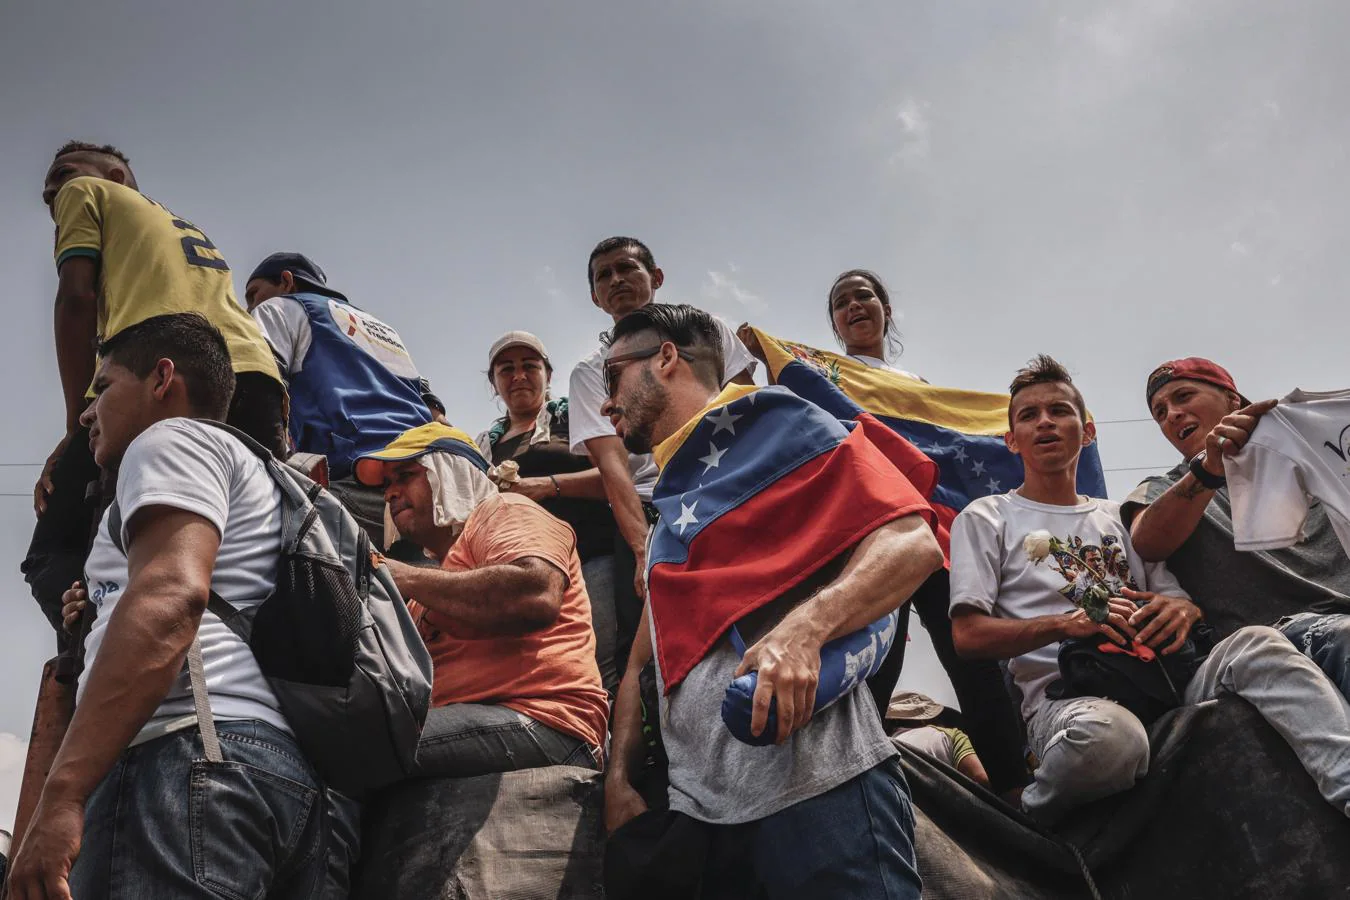 Los choques entre chavistas y opositores, en imágenes